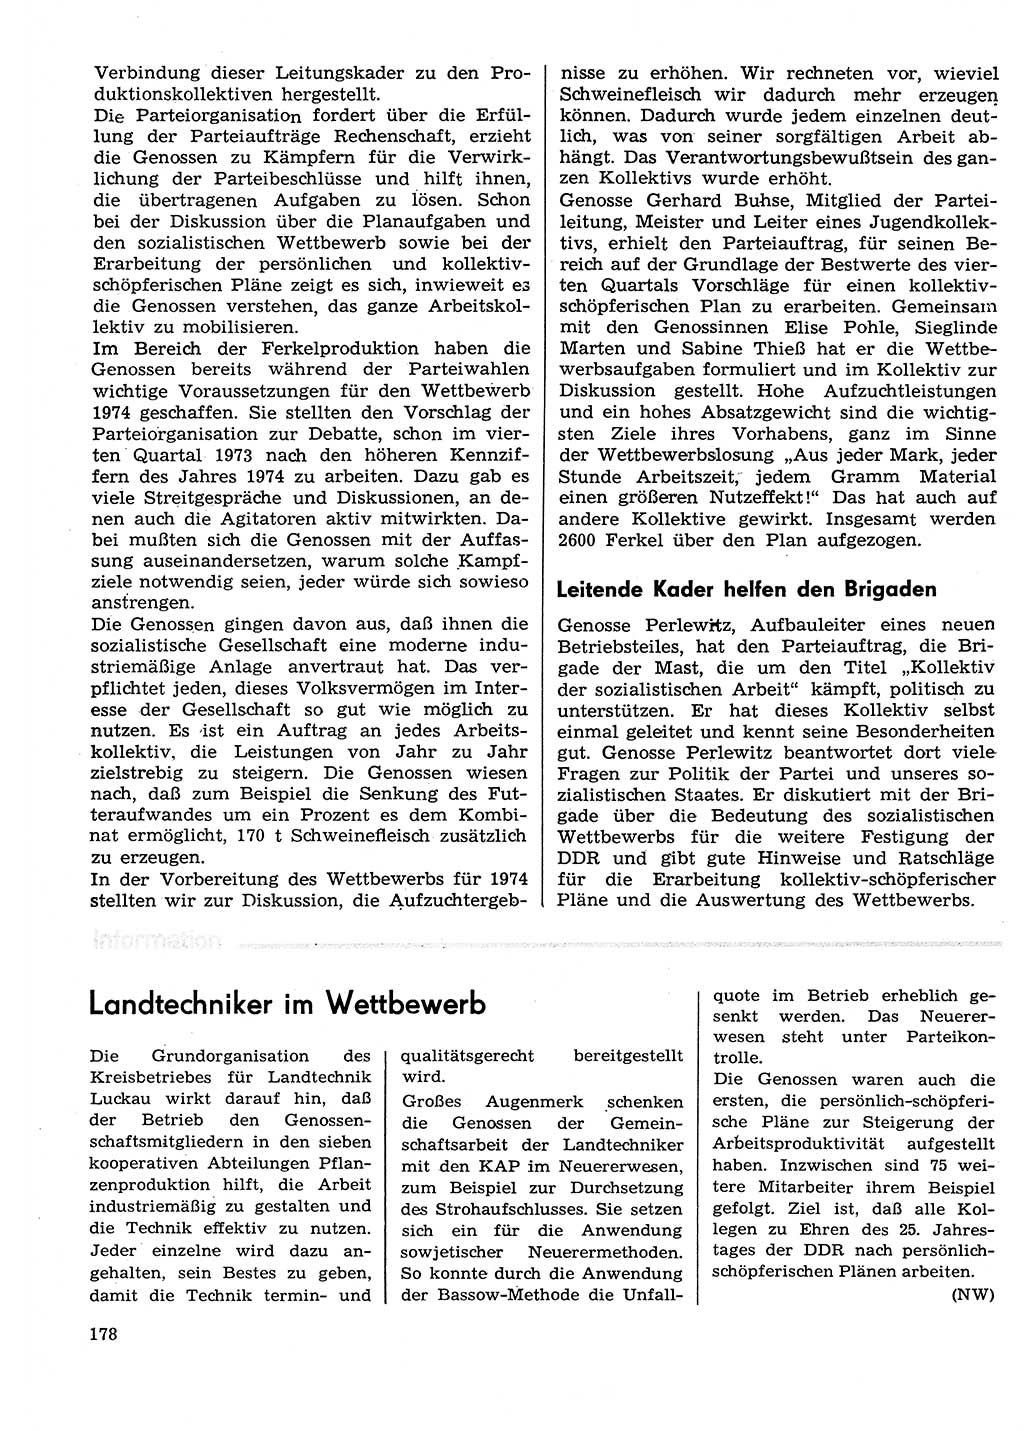 Neuer Weg (NW), Organ des Zentralkomitees (ZK) der SED (Sozialistische Einheitspartei Deutschlands) für Fragen des Parteilebens, 29. Jahrgang [Deutsche Demokratische Republik (DDR)] 1974, Seite 178 (NW ZK SED DDR 1974, S. 178)